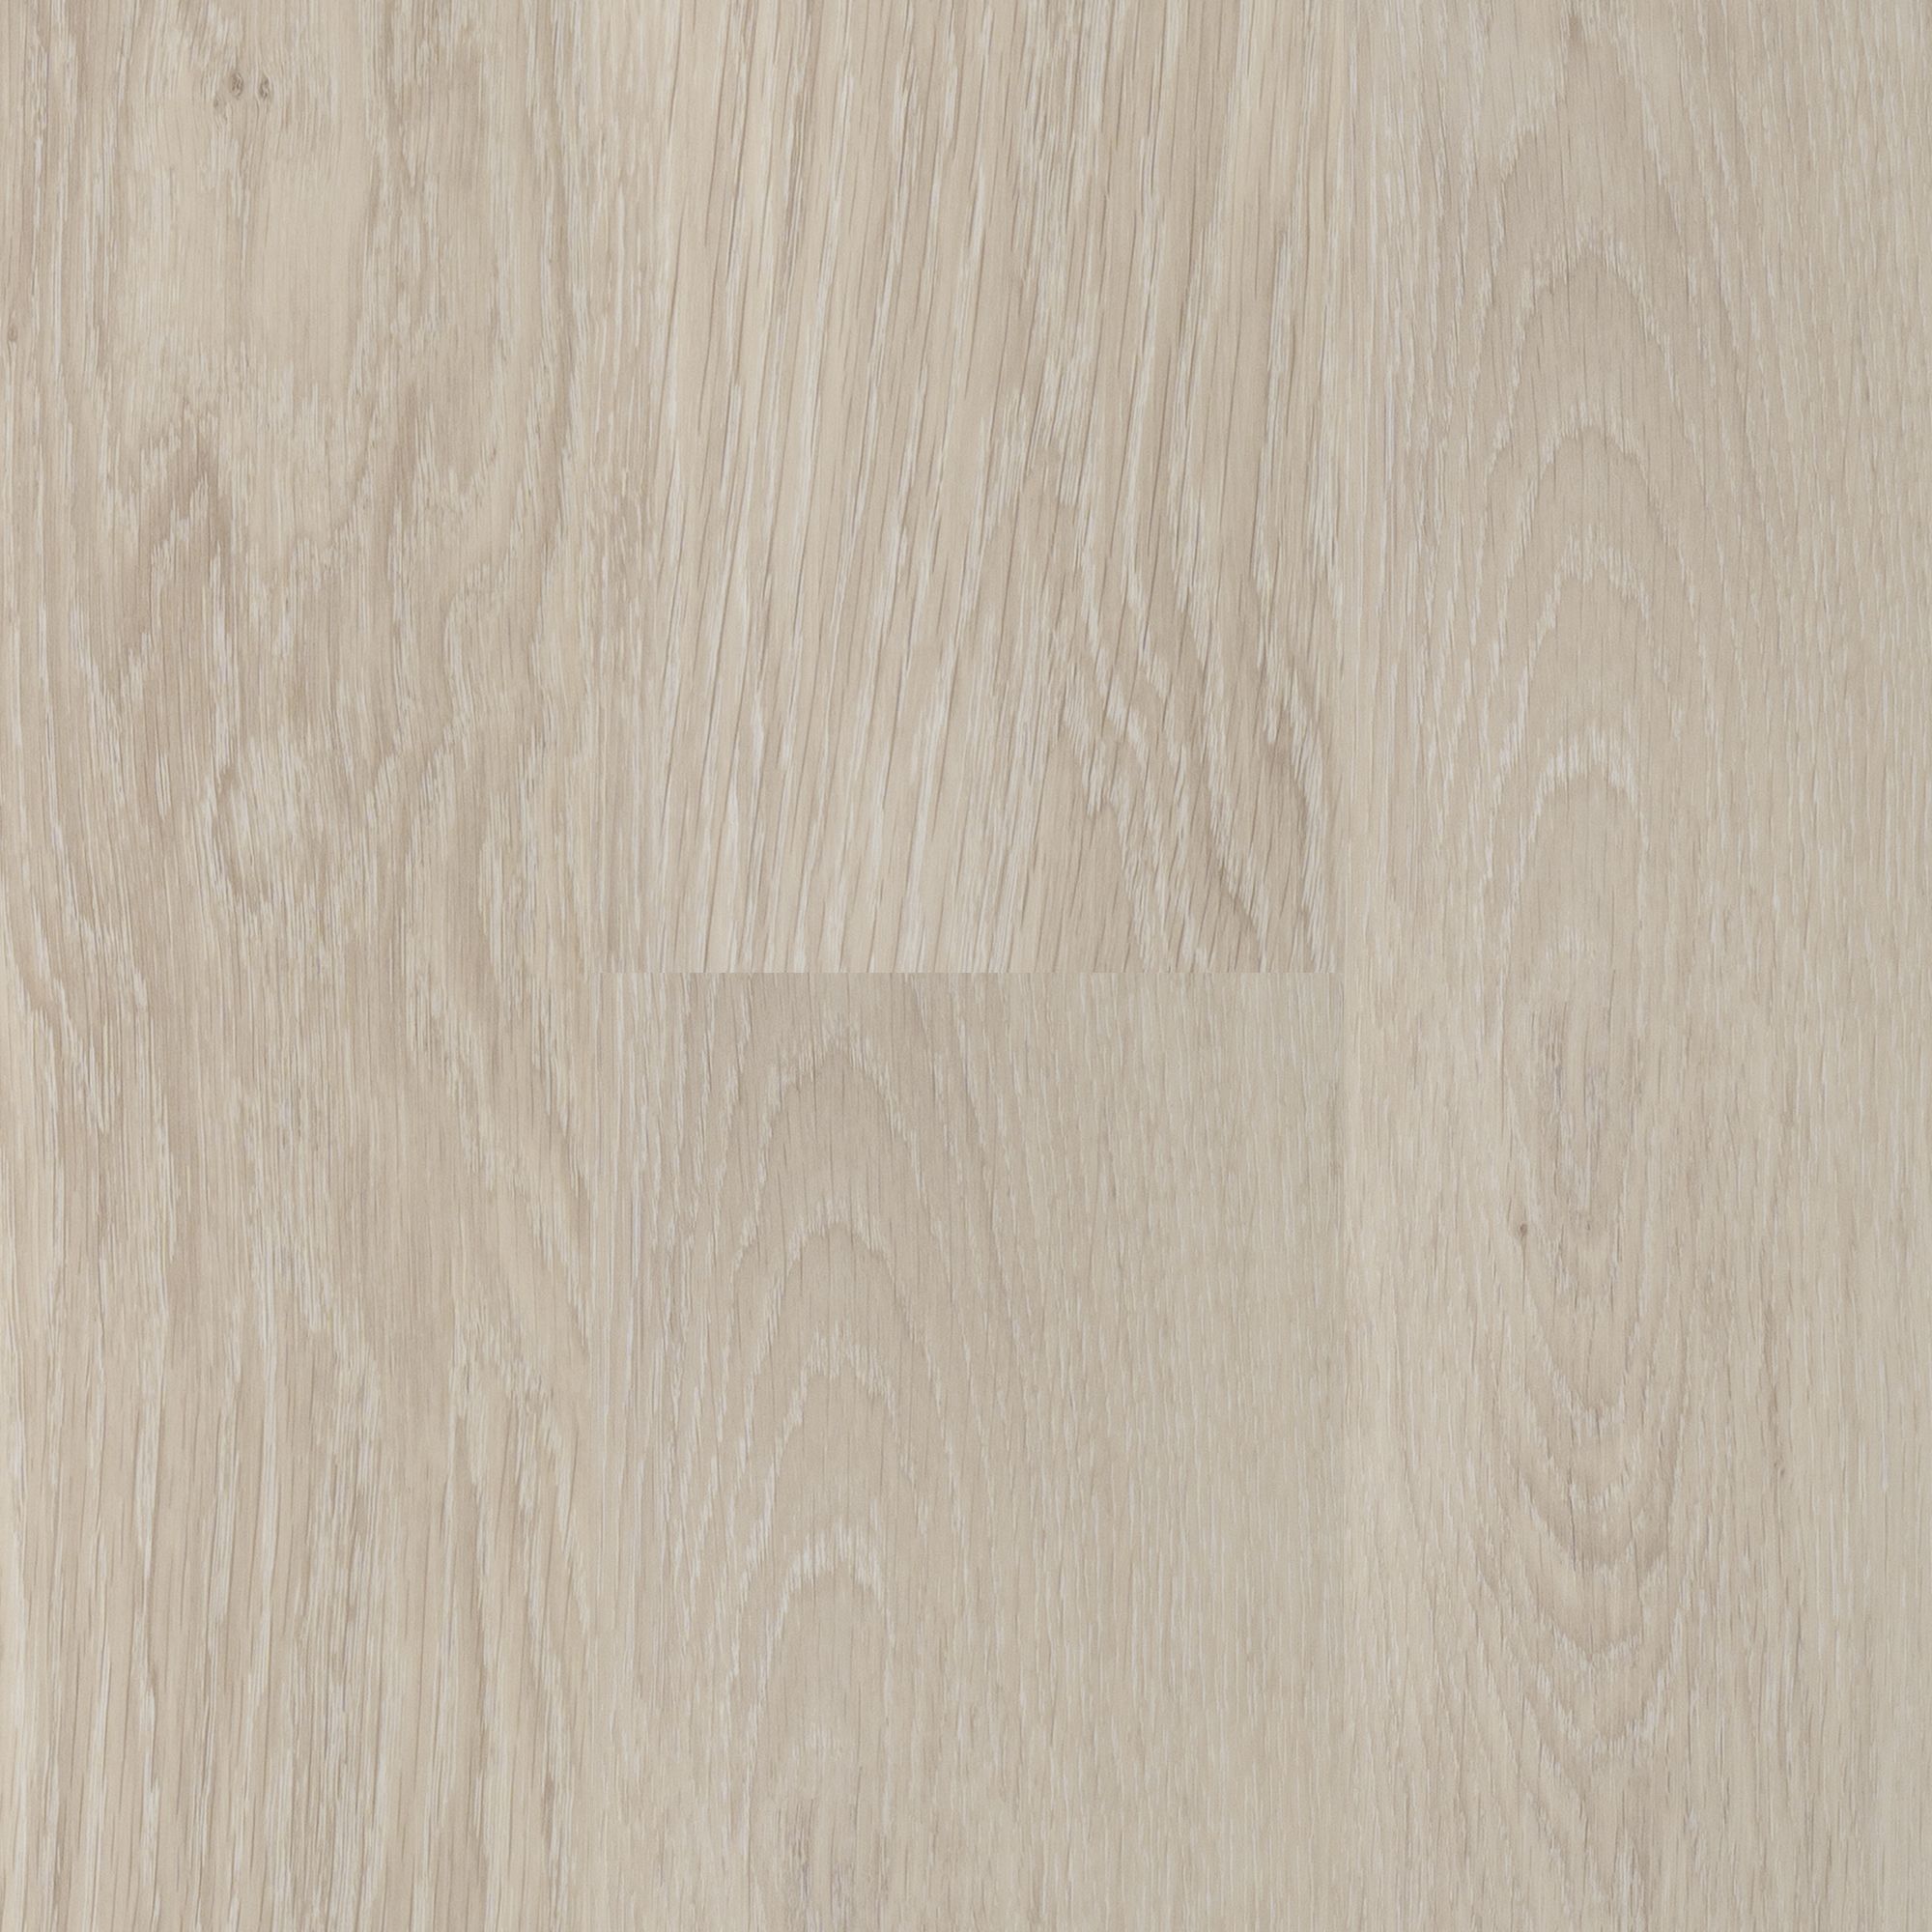 Кварц-виниловый ламинат Van Kleeck Floor Руис VKF-029 ламинат clix floor